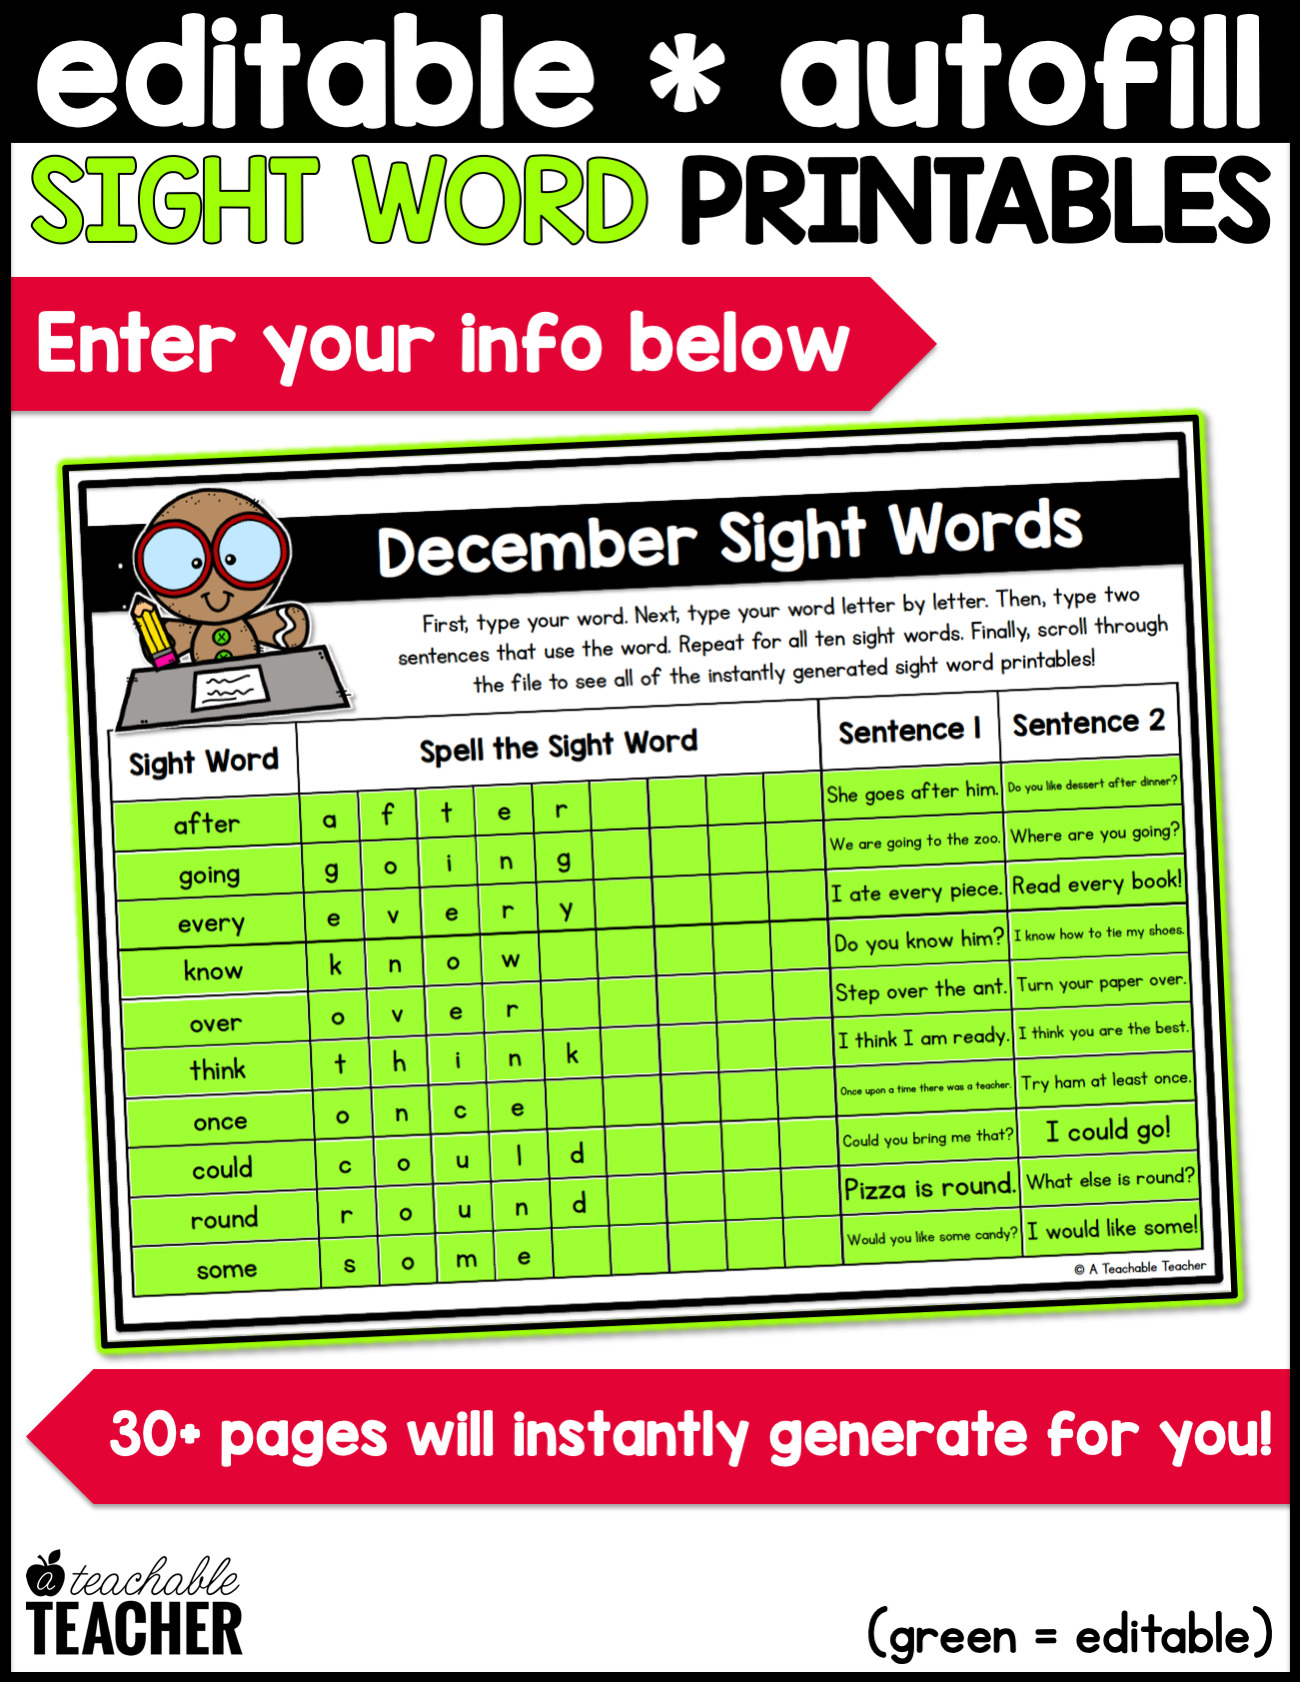 editable-sight-word-printables-december-a-teachable-teacher